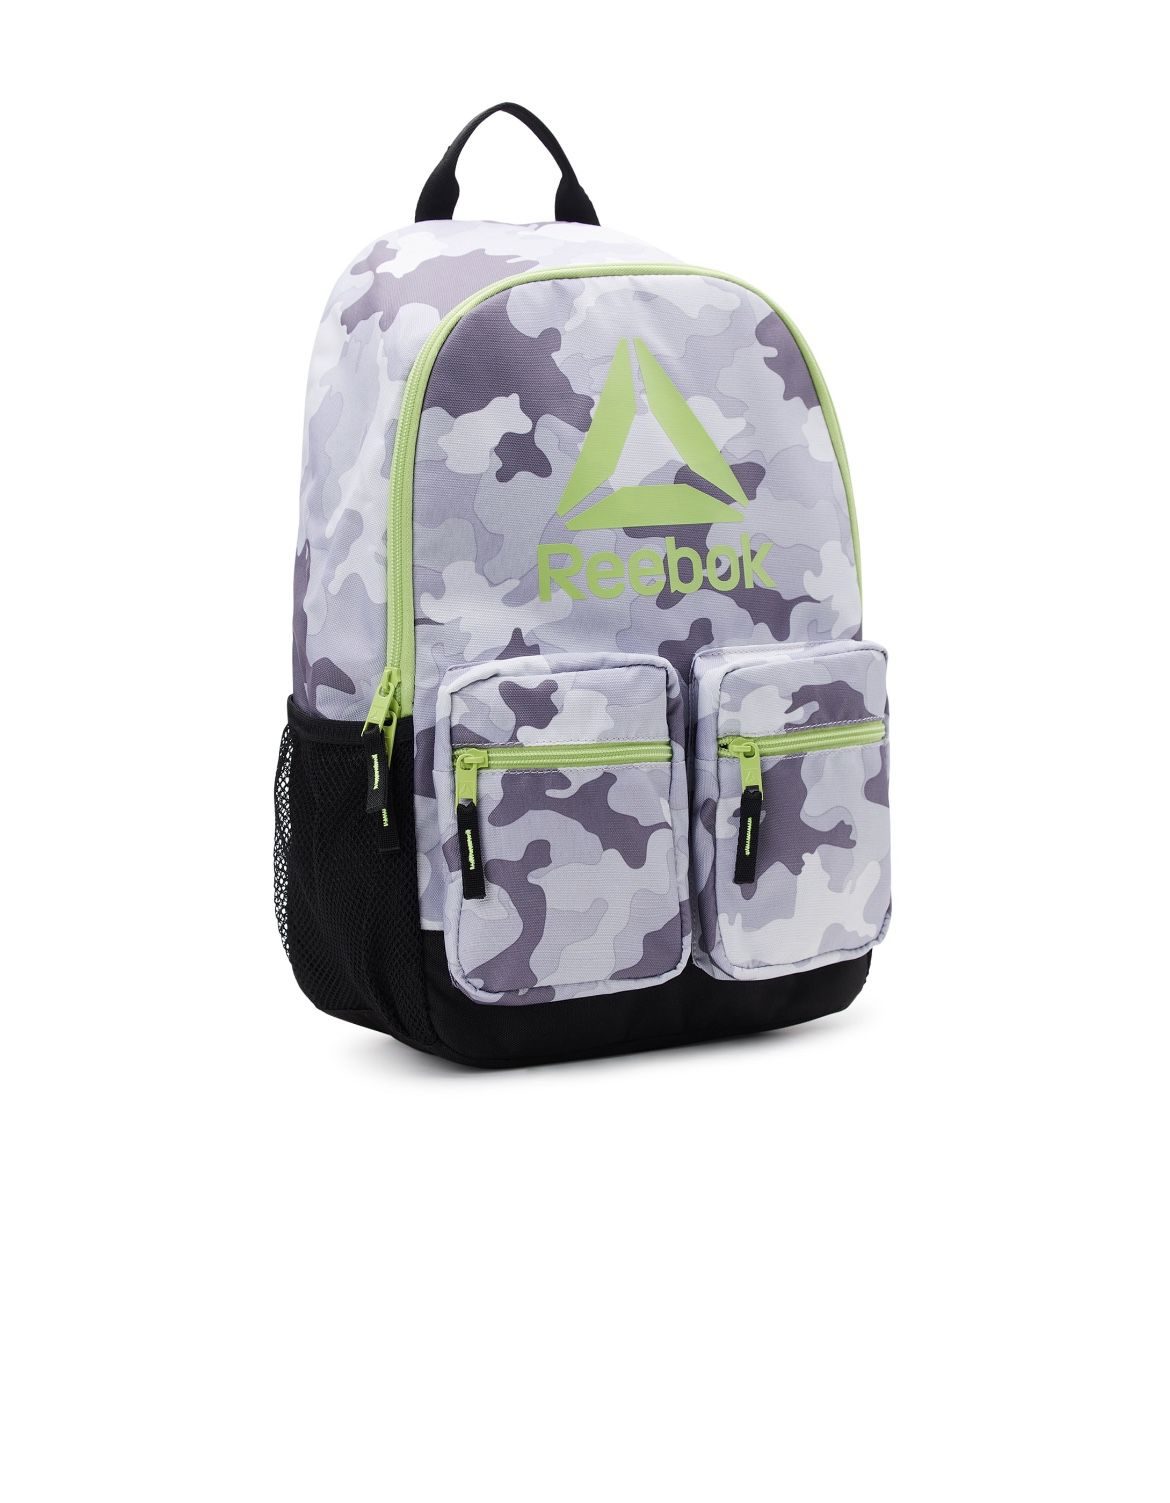 Reebok Backpack New